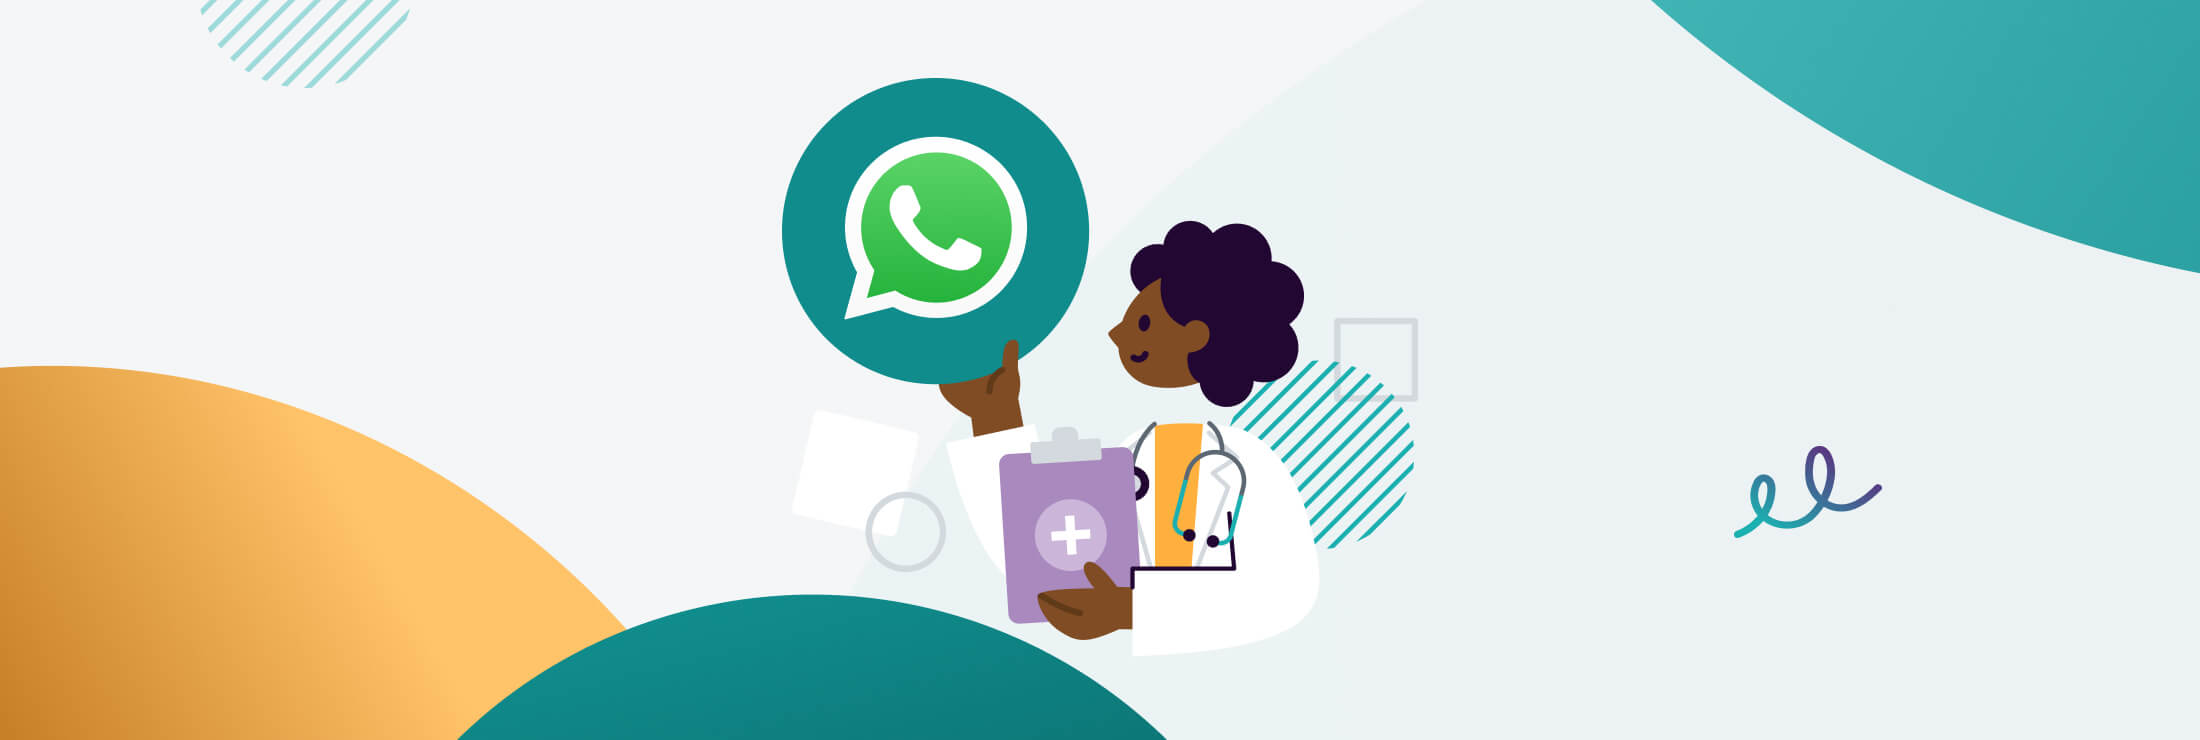 Ventajas de usar WhatsApp en sanidad